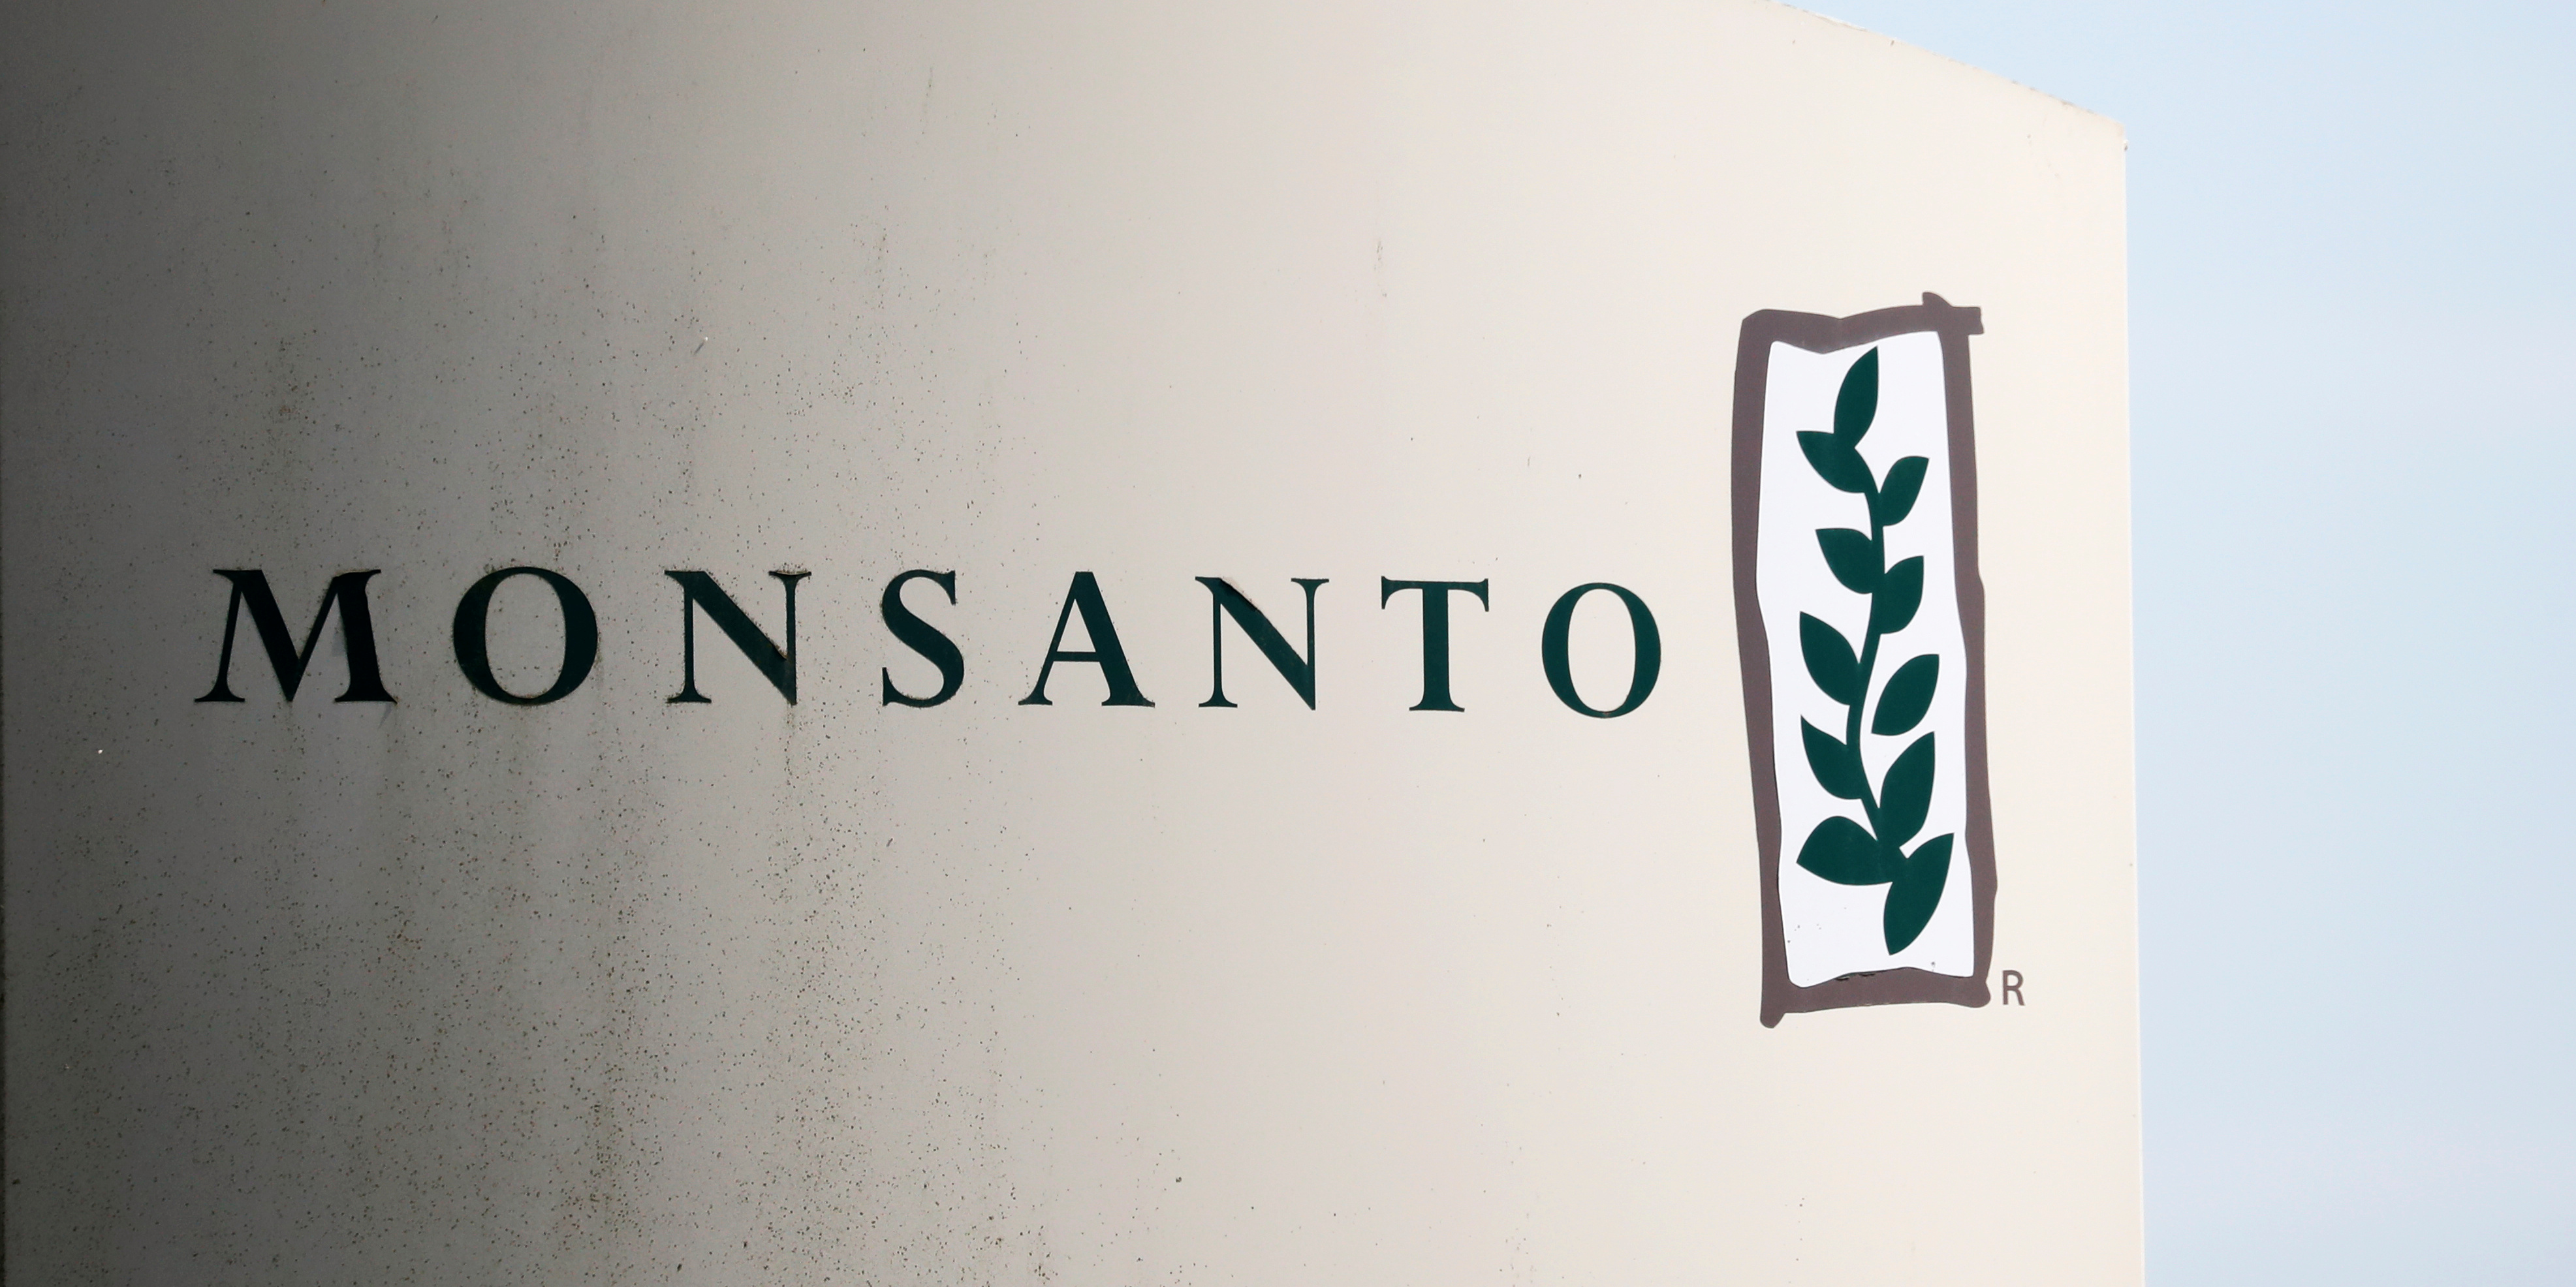 États-Unis : Monsanto condamné à une amende géante de 857 millions de dollars pour une exposition à des polluants toxiques